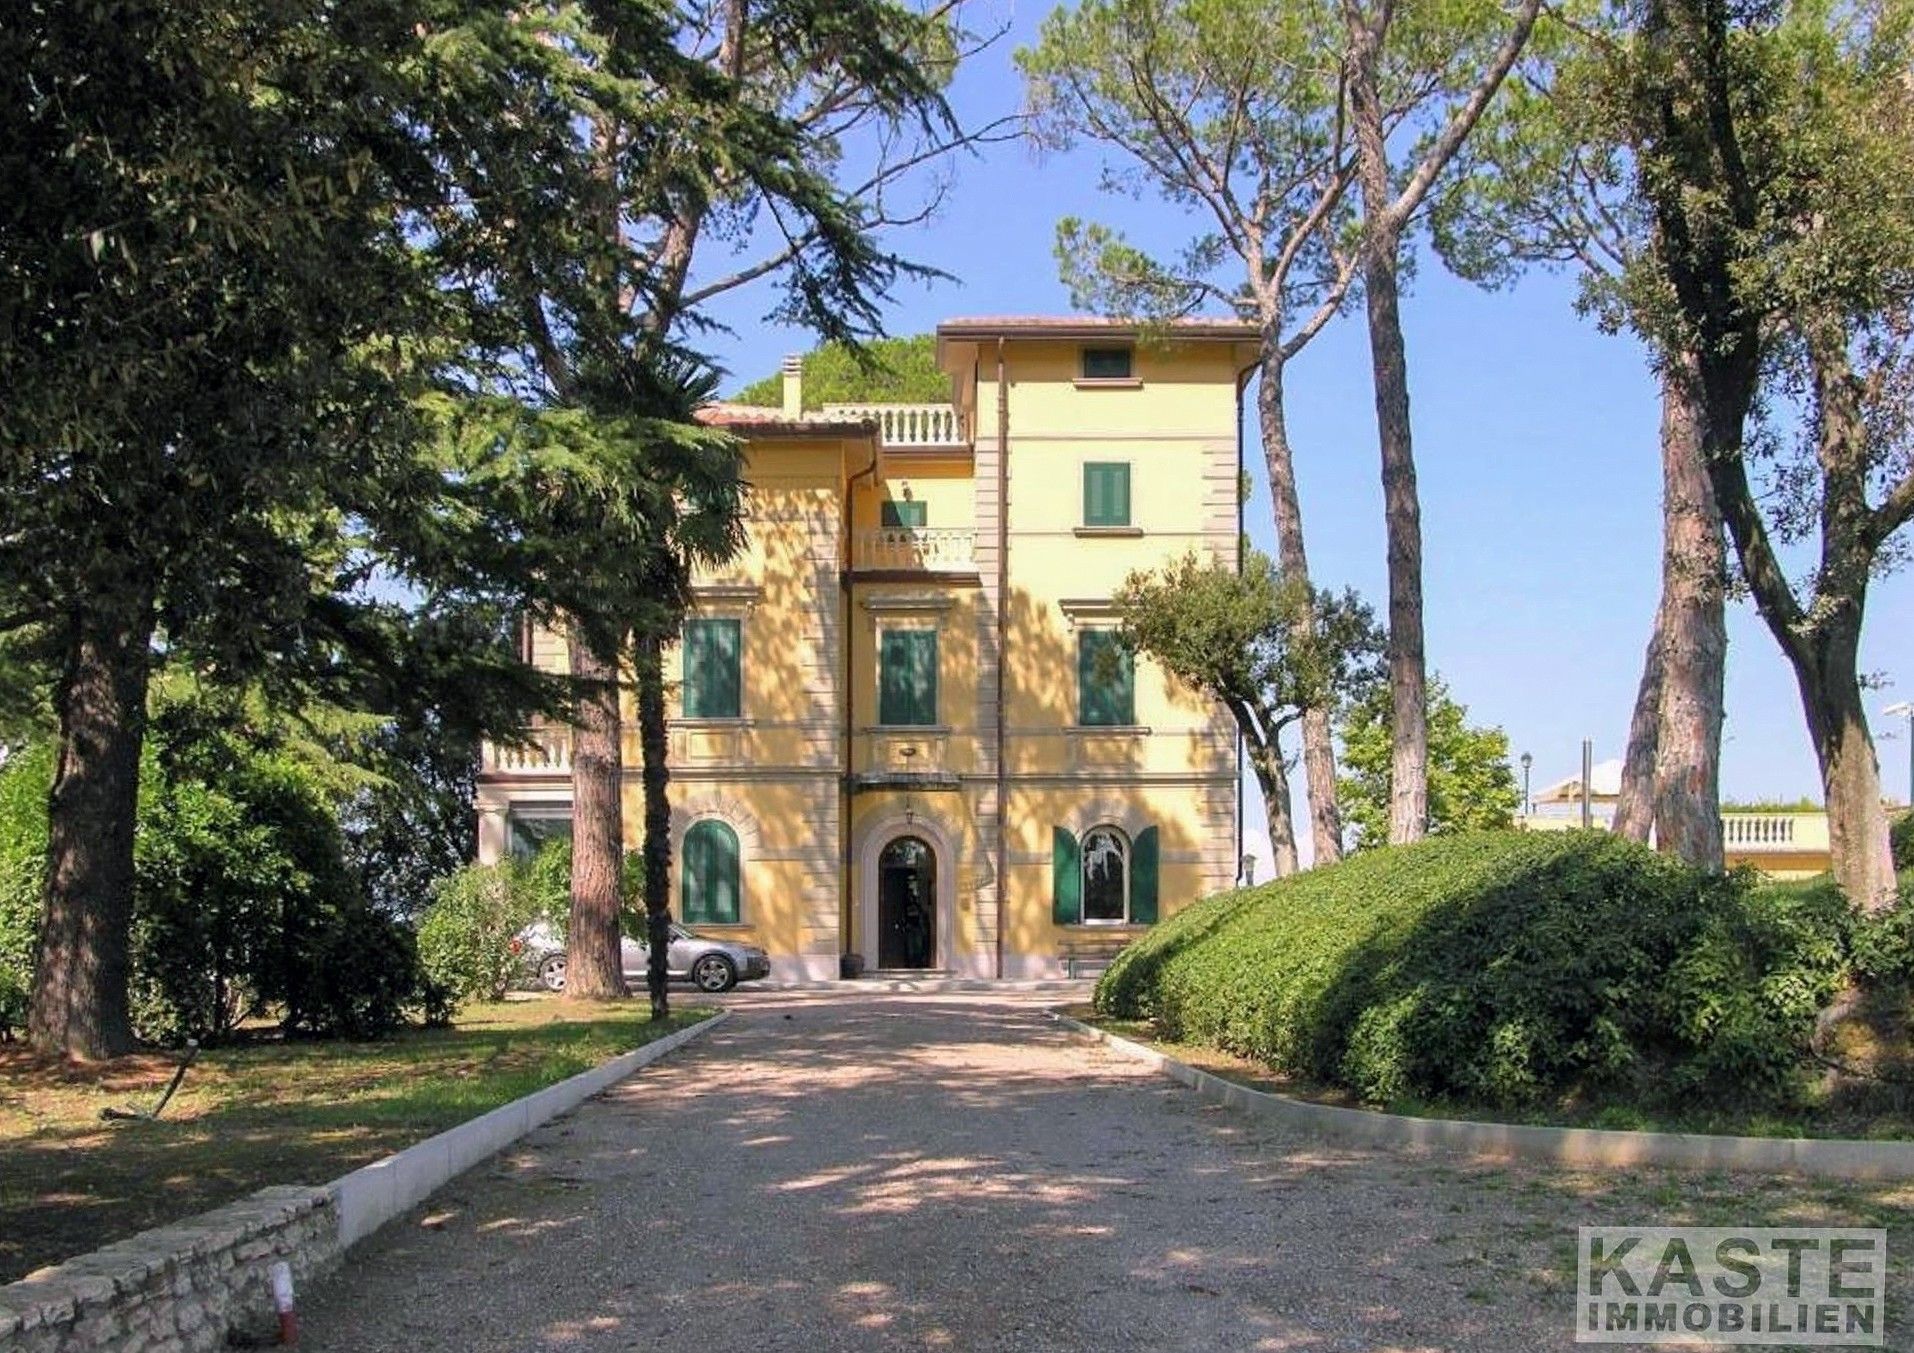 Photos Tuscany Villa with 5 ha of Land and Vineyard